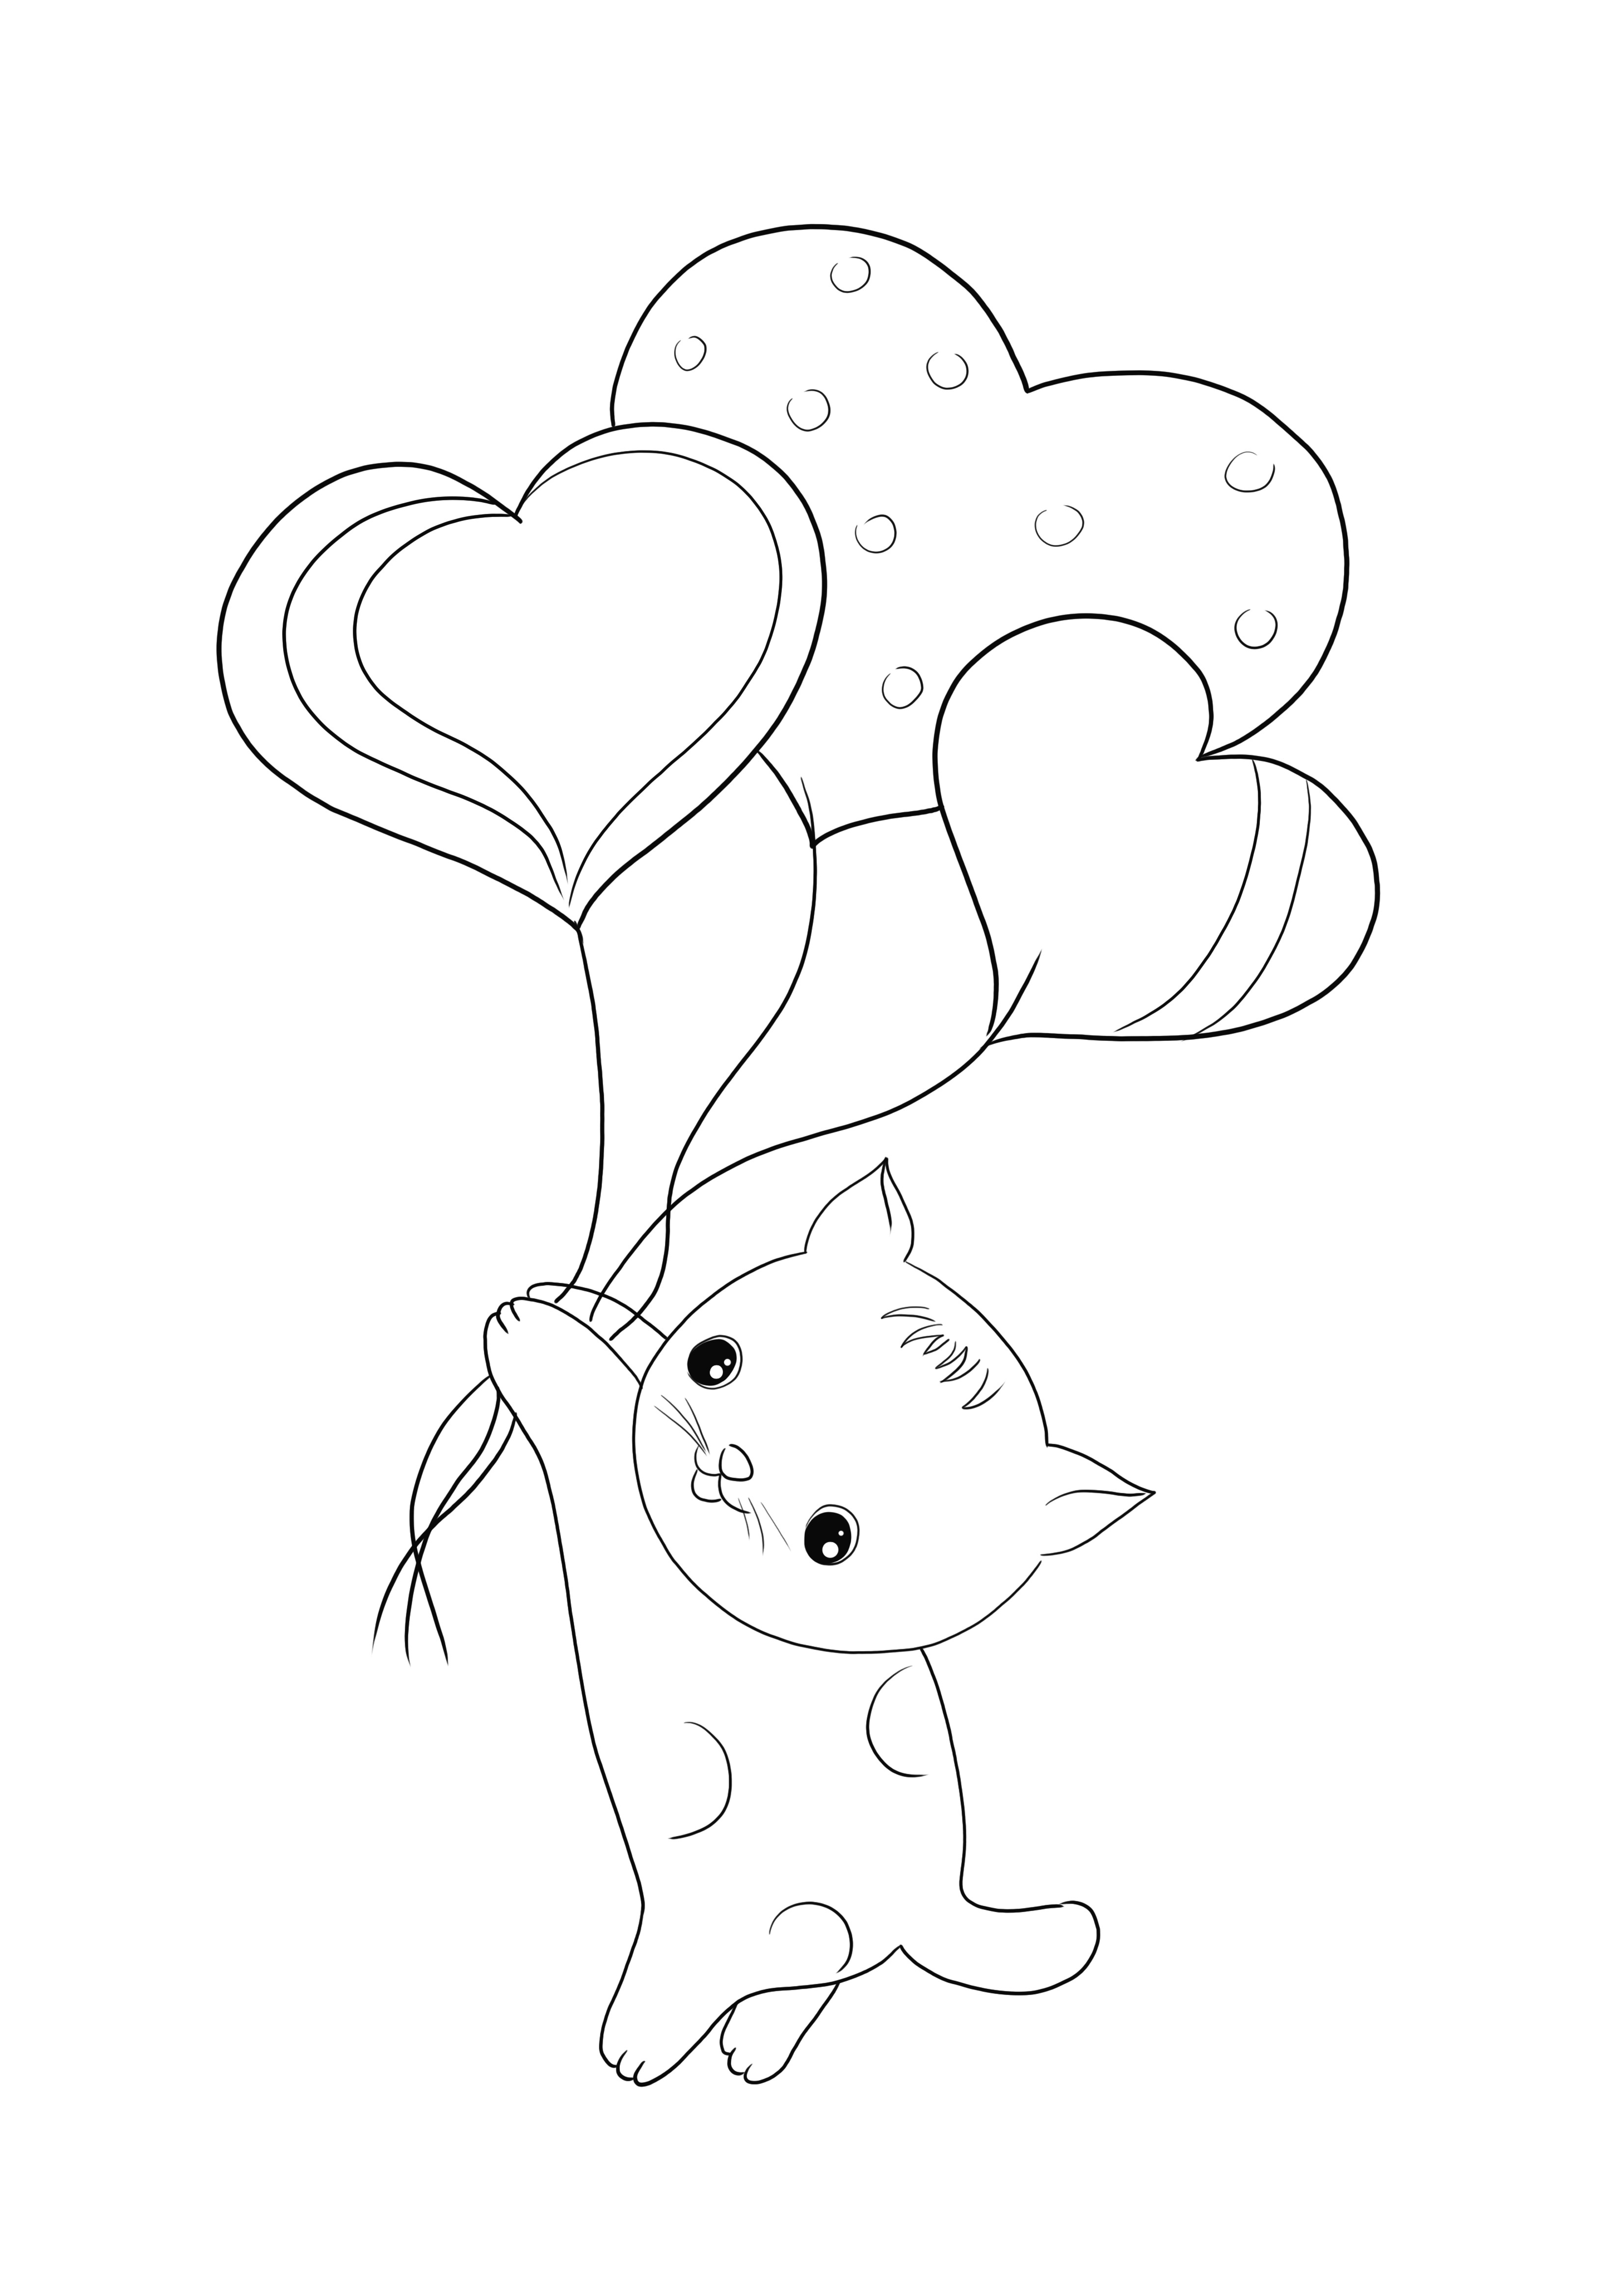 Gato com balões em forma de coração para imprimir gratuitamente e simples imagem para colorir para crianças